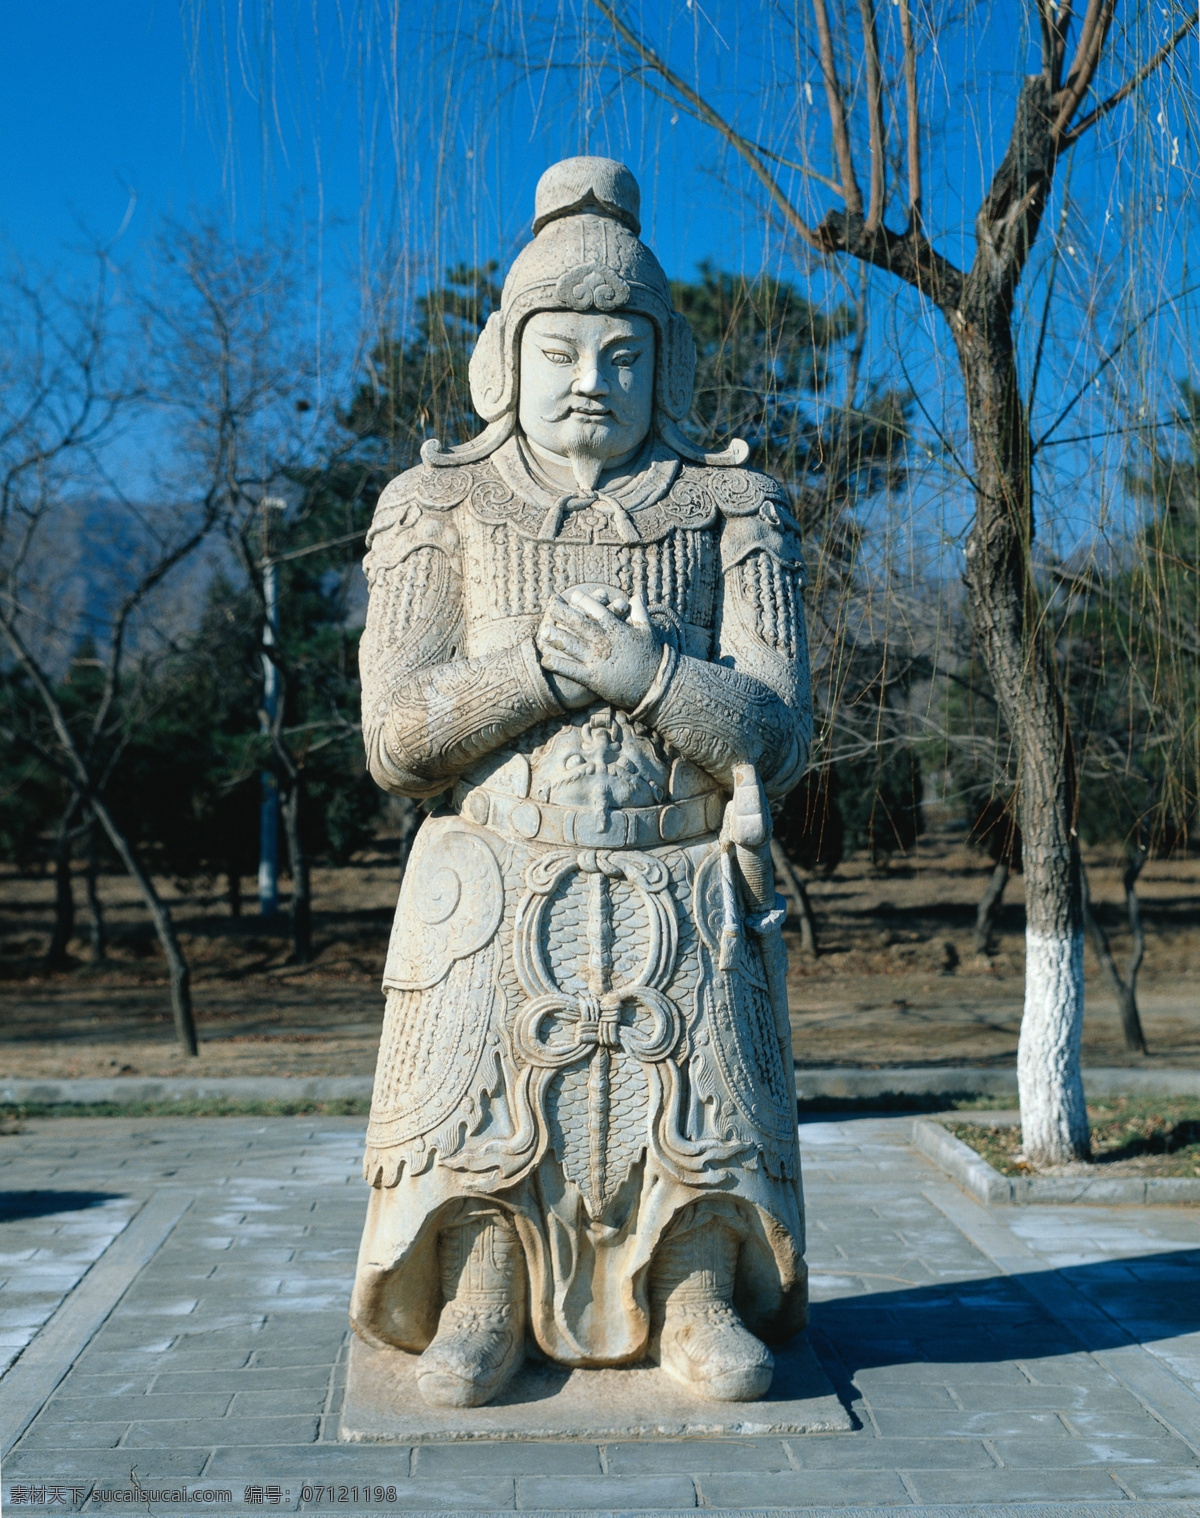 明十三陵 神道 上 武将 雕像 北京 古代文物 雕塑 建筑园林